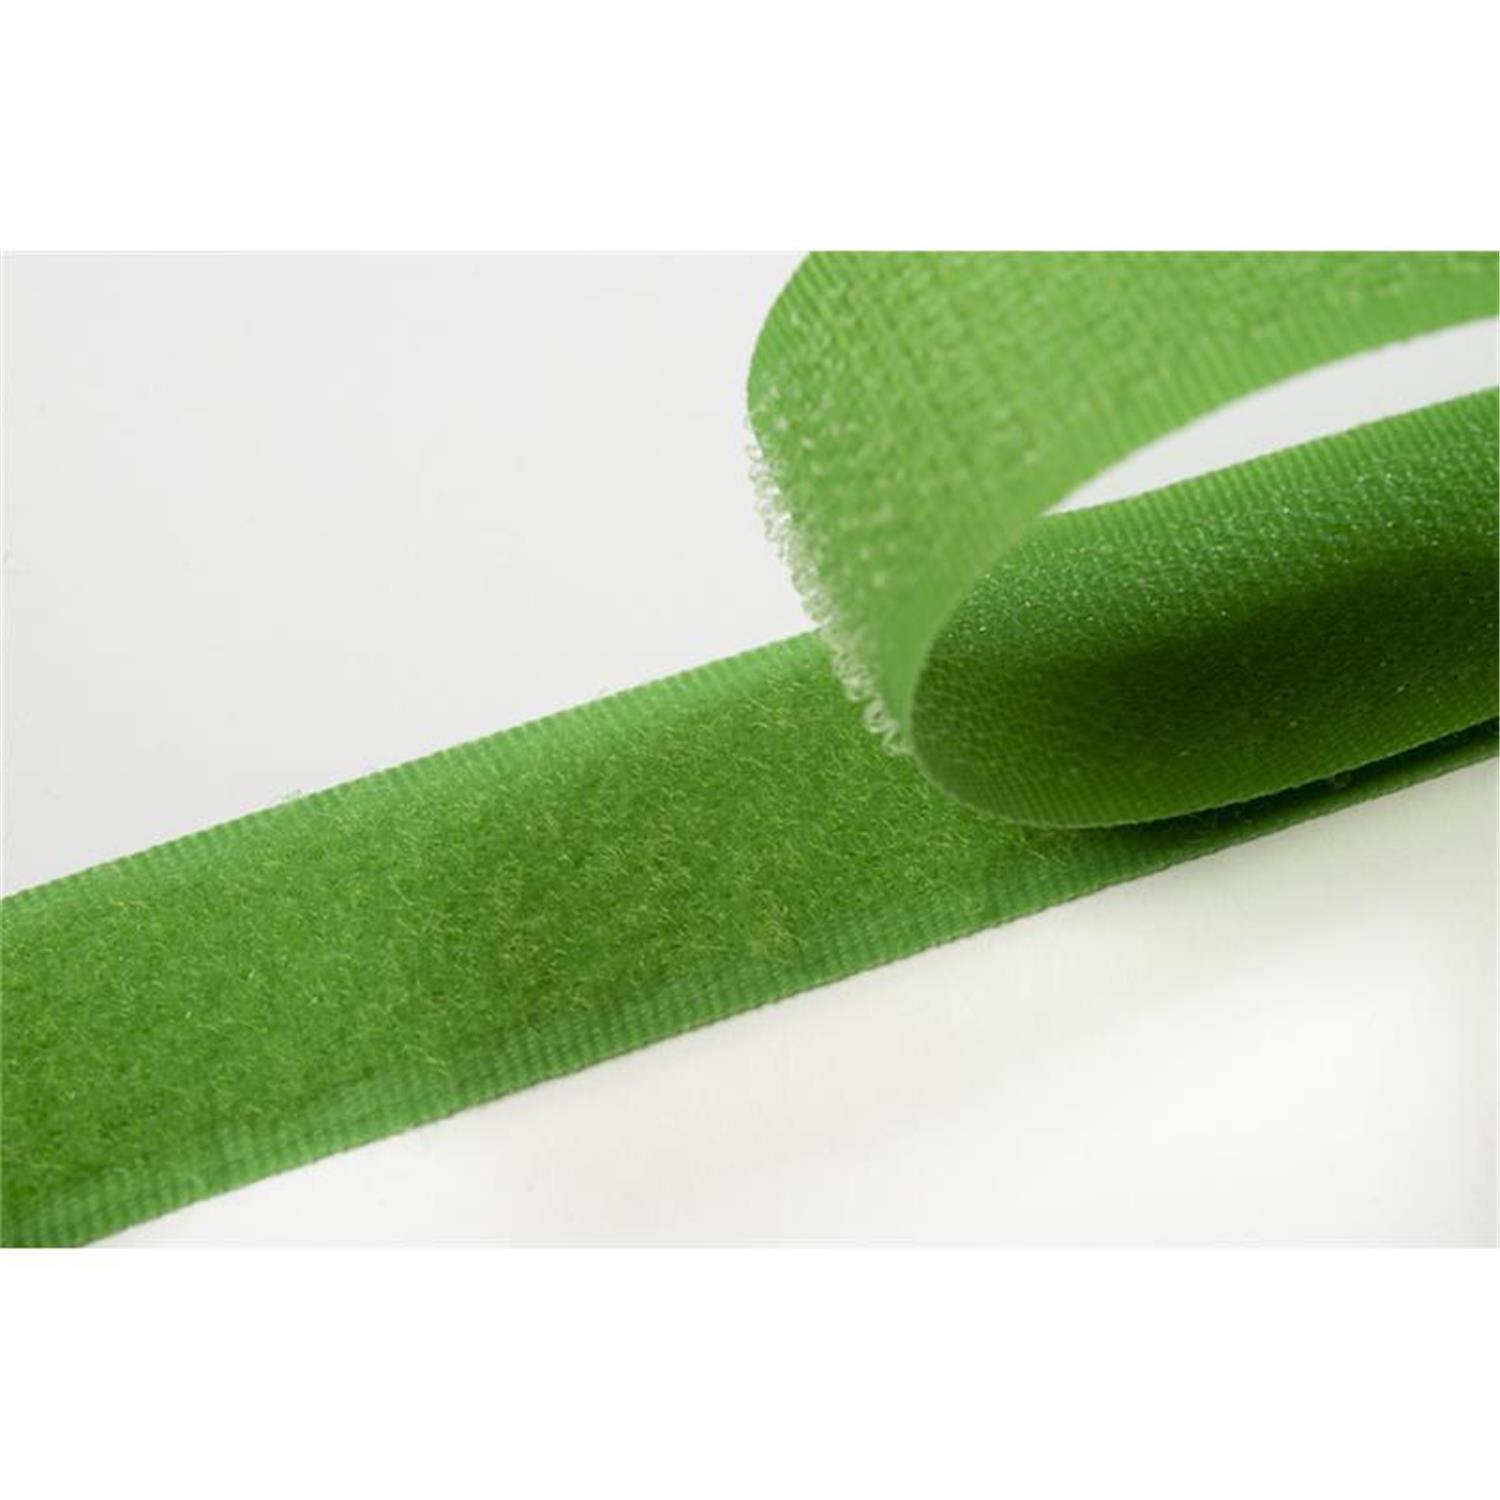 Klettband zum aufnähen, 38 mm, frühlingsgrün #08 4 Meter